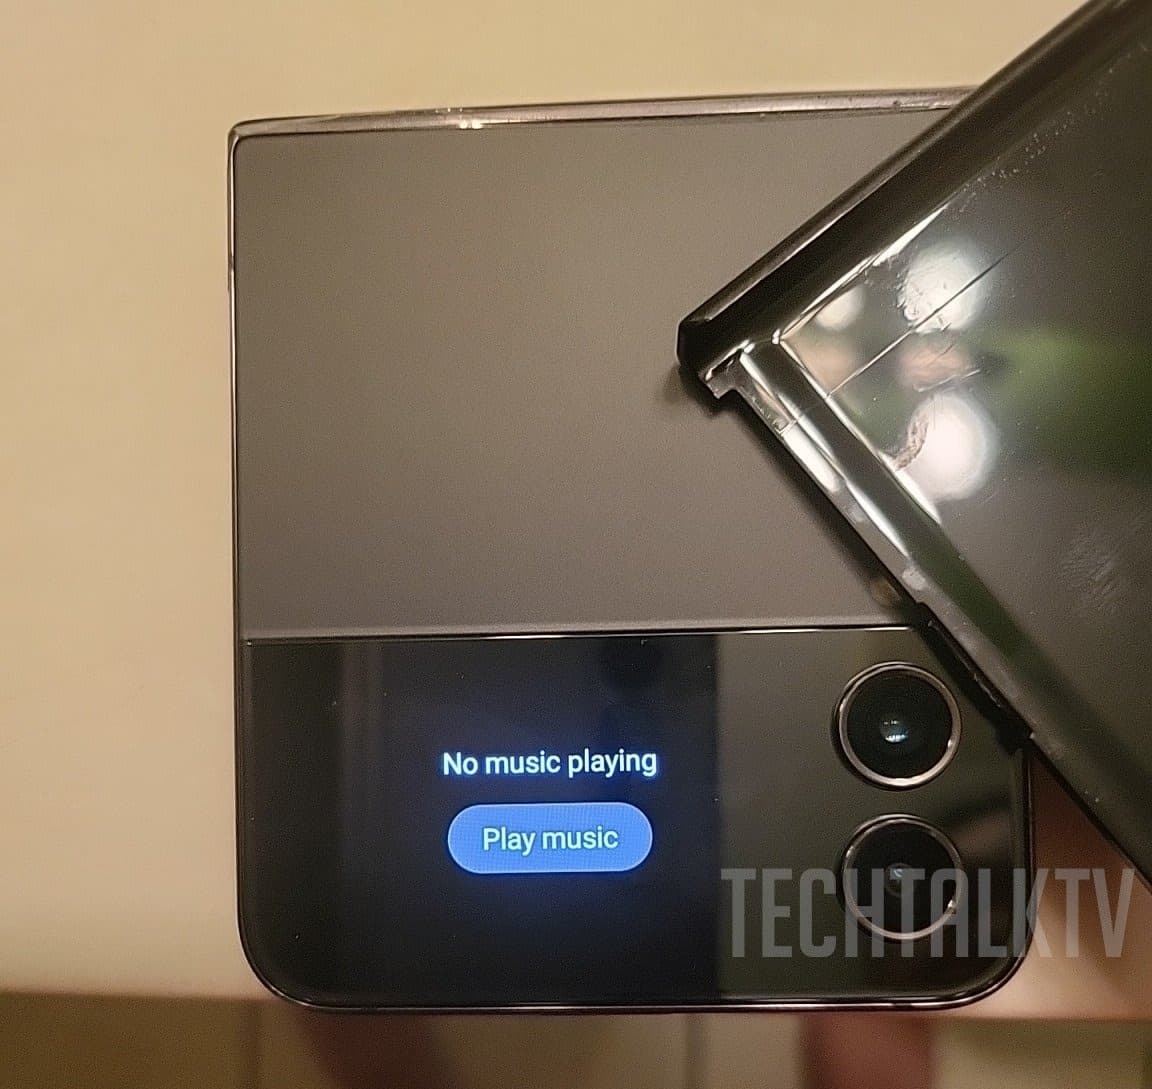 Samsung Galaxy Flip4 показався на живих фото. Лінія згинання дисплея вже не так помітна, як на минулих моделях